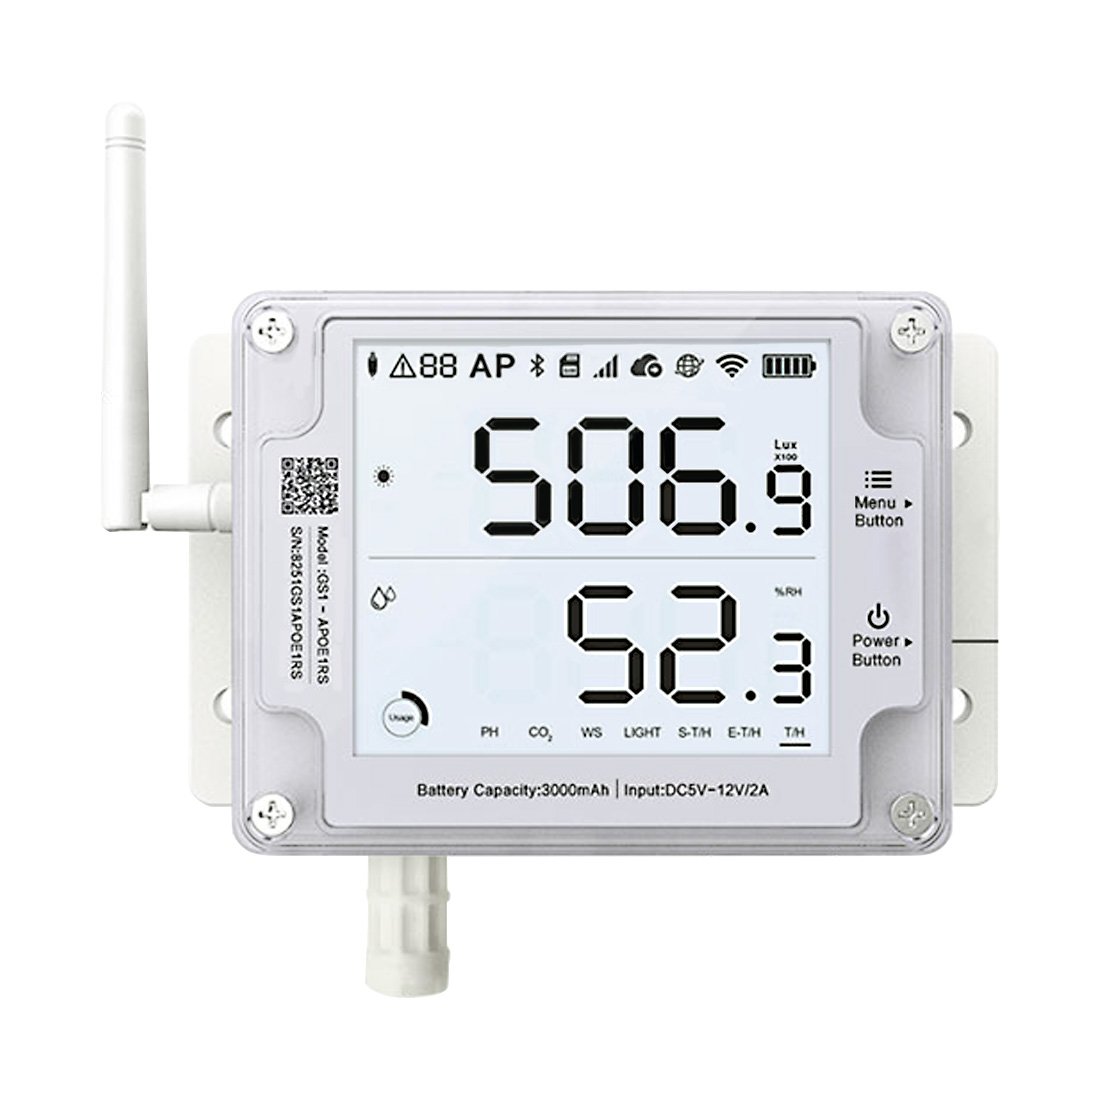 Remote Temperature monitoring, humidity monitoring